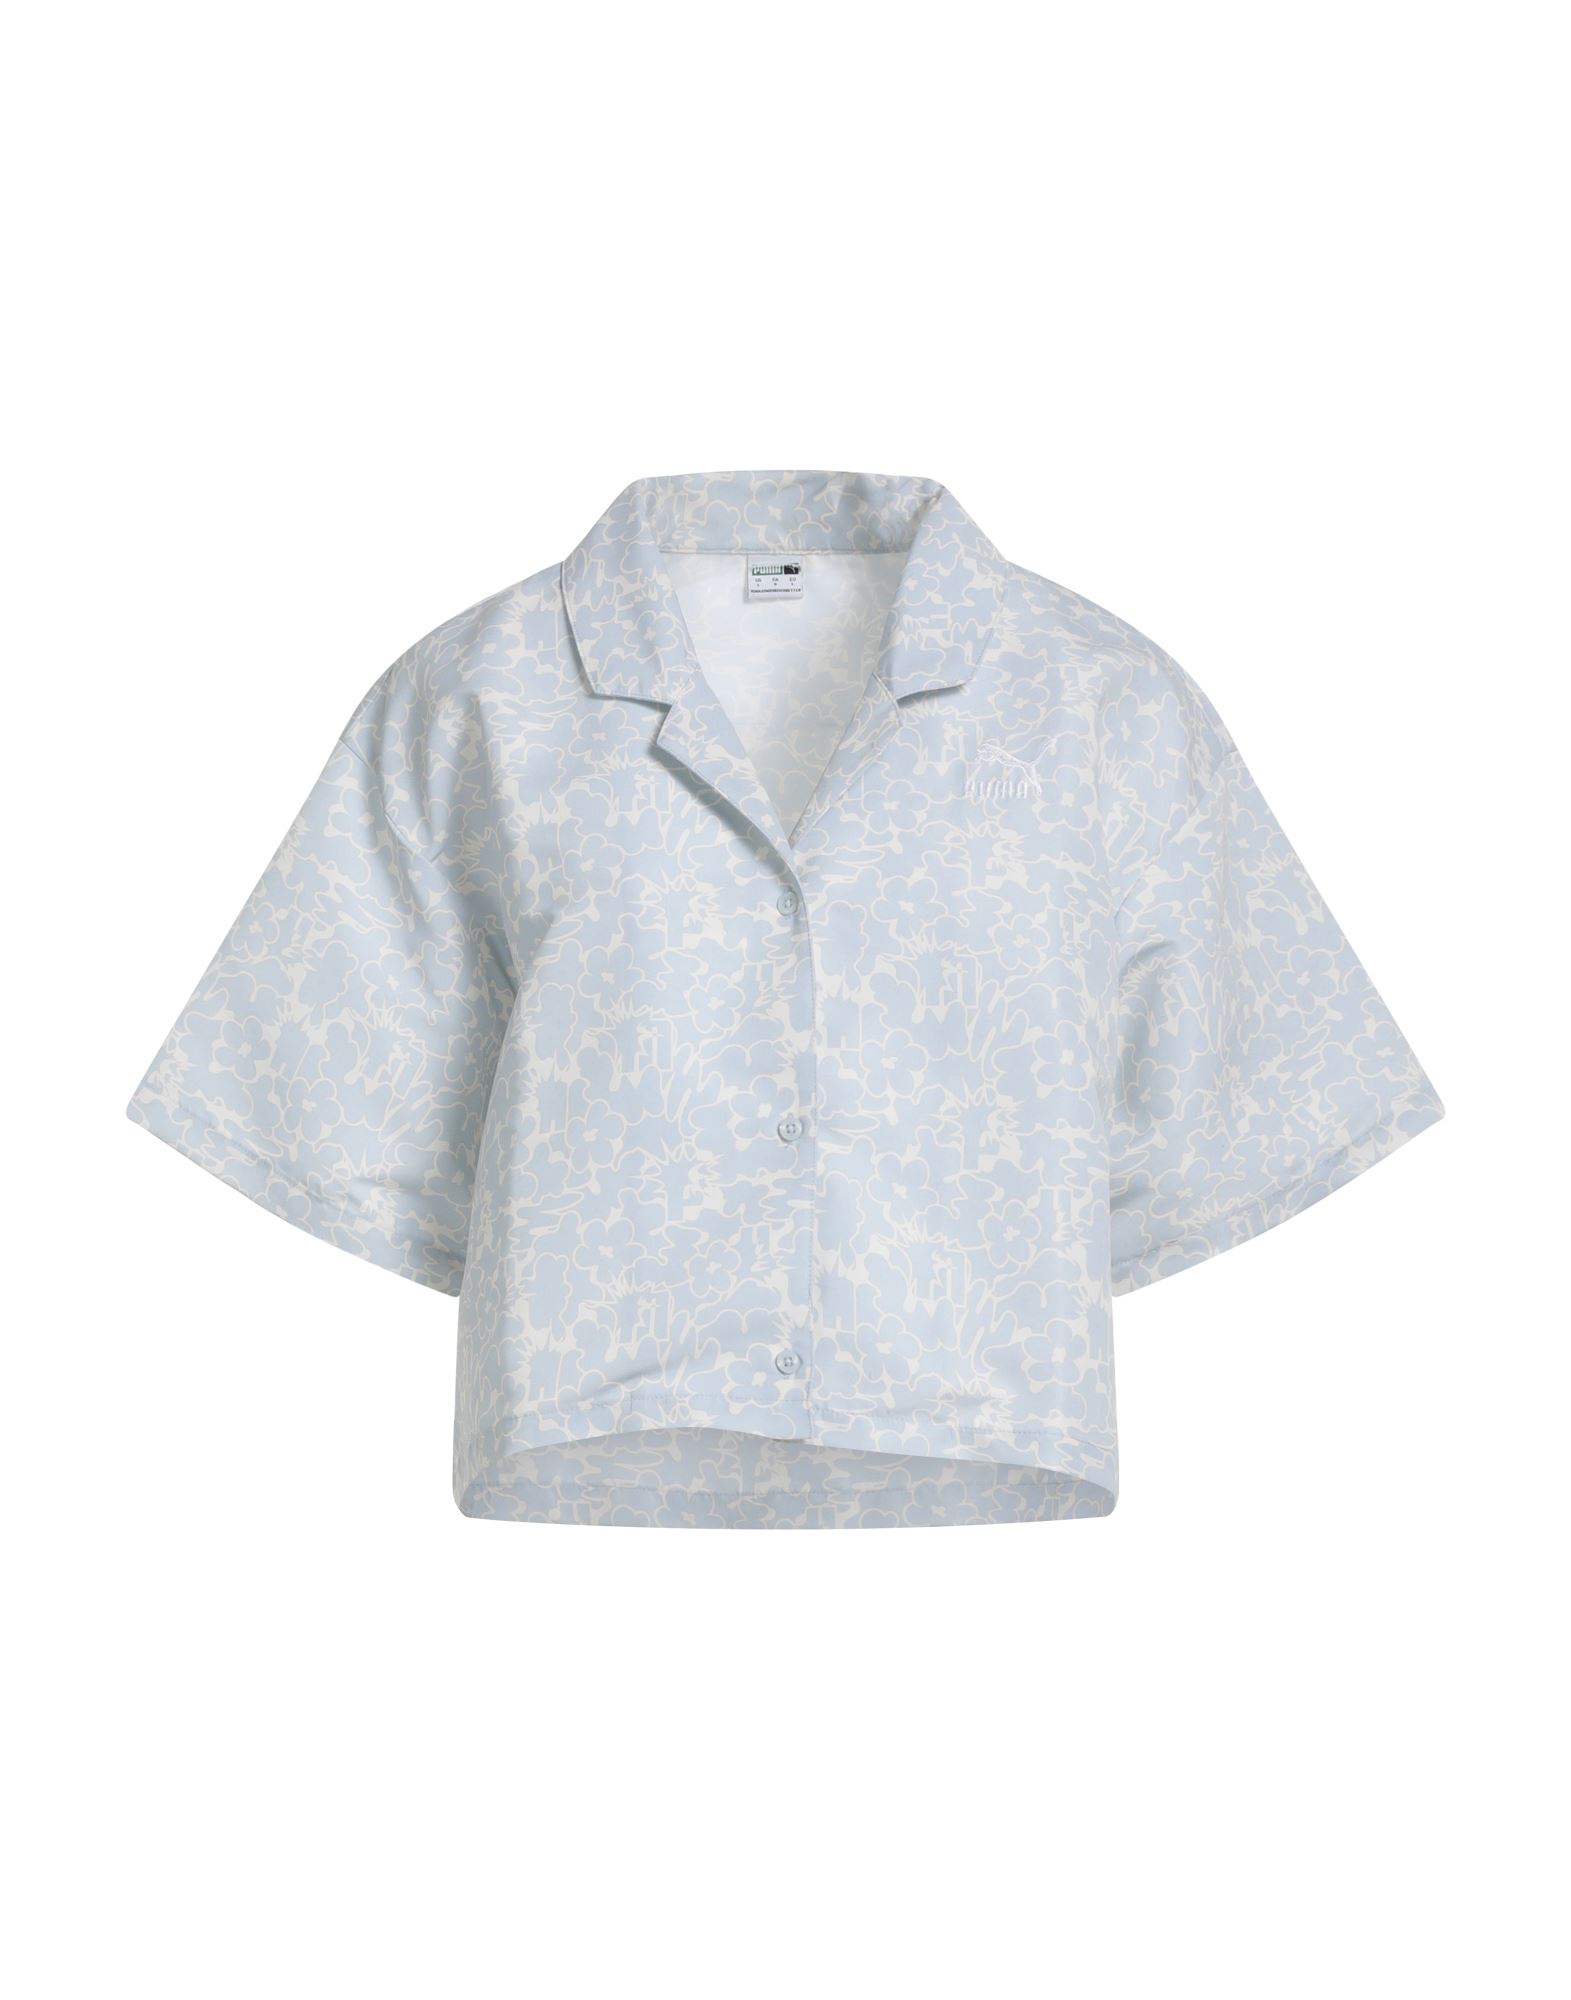 Shop Puma Classics Summer Resort Aop Twill Ss Shirt Woman Shirt Light Grey Size L Polyester